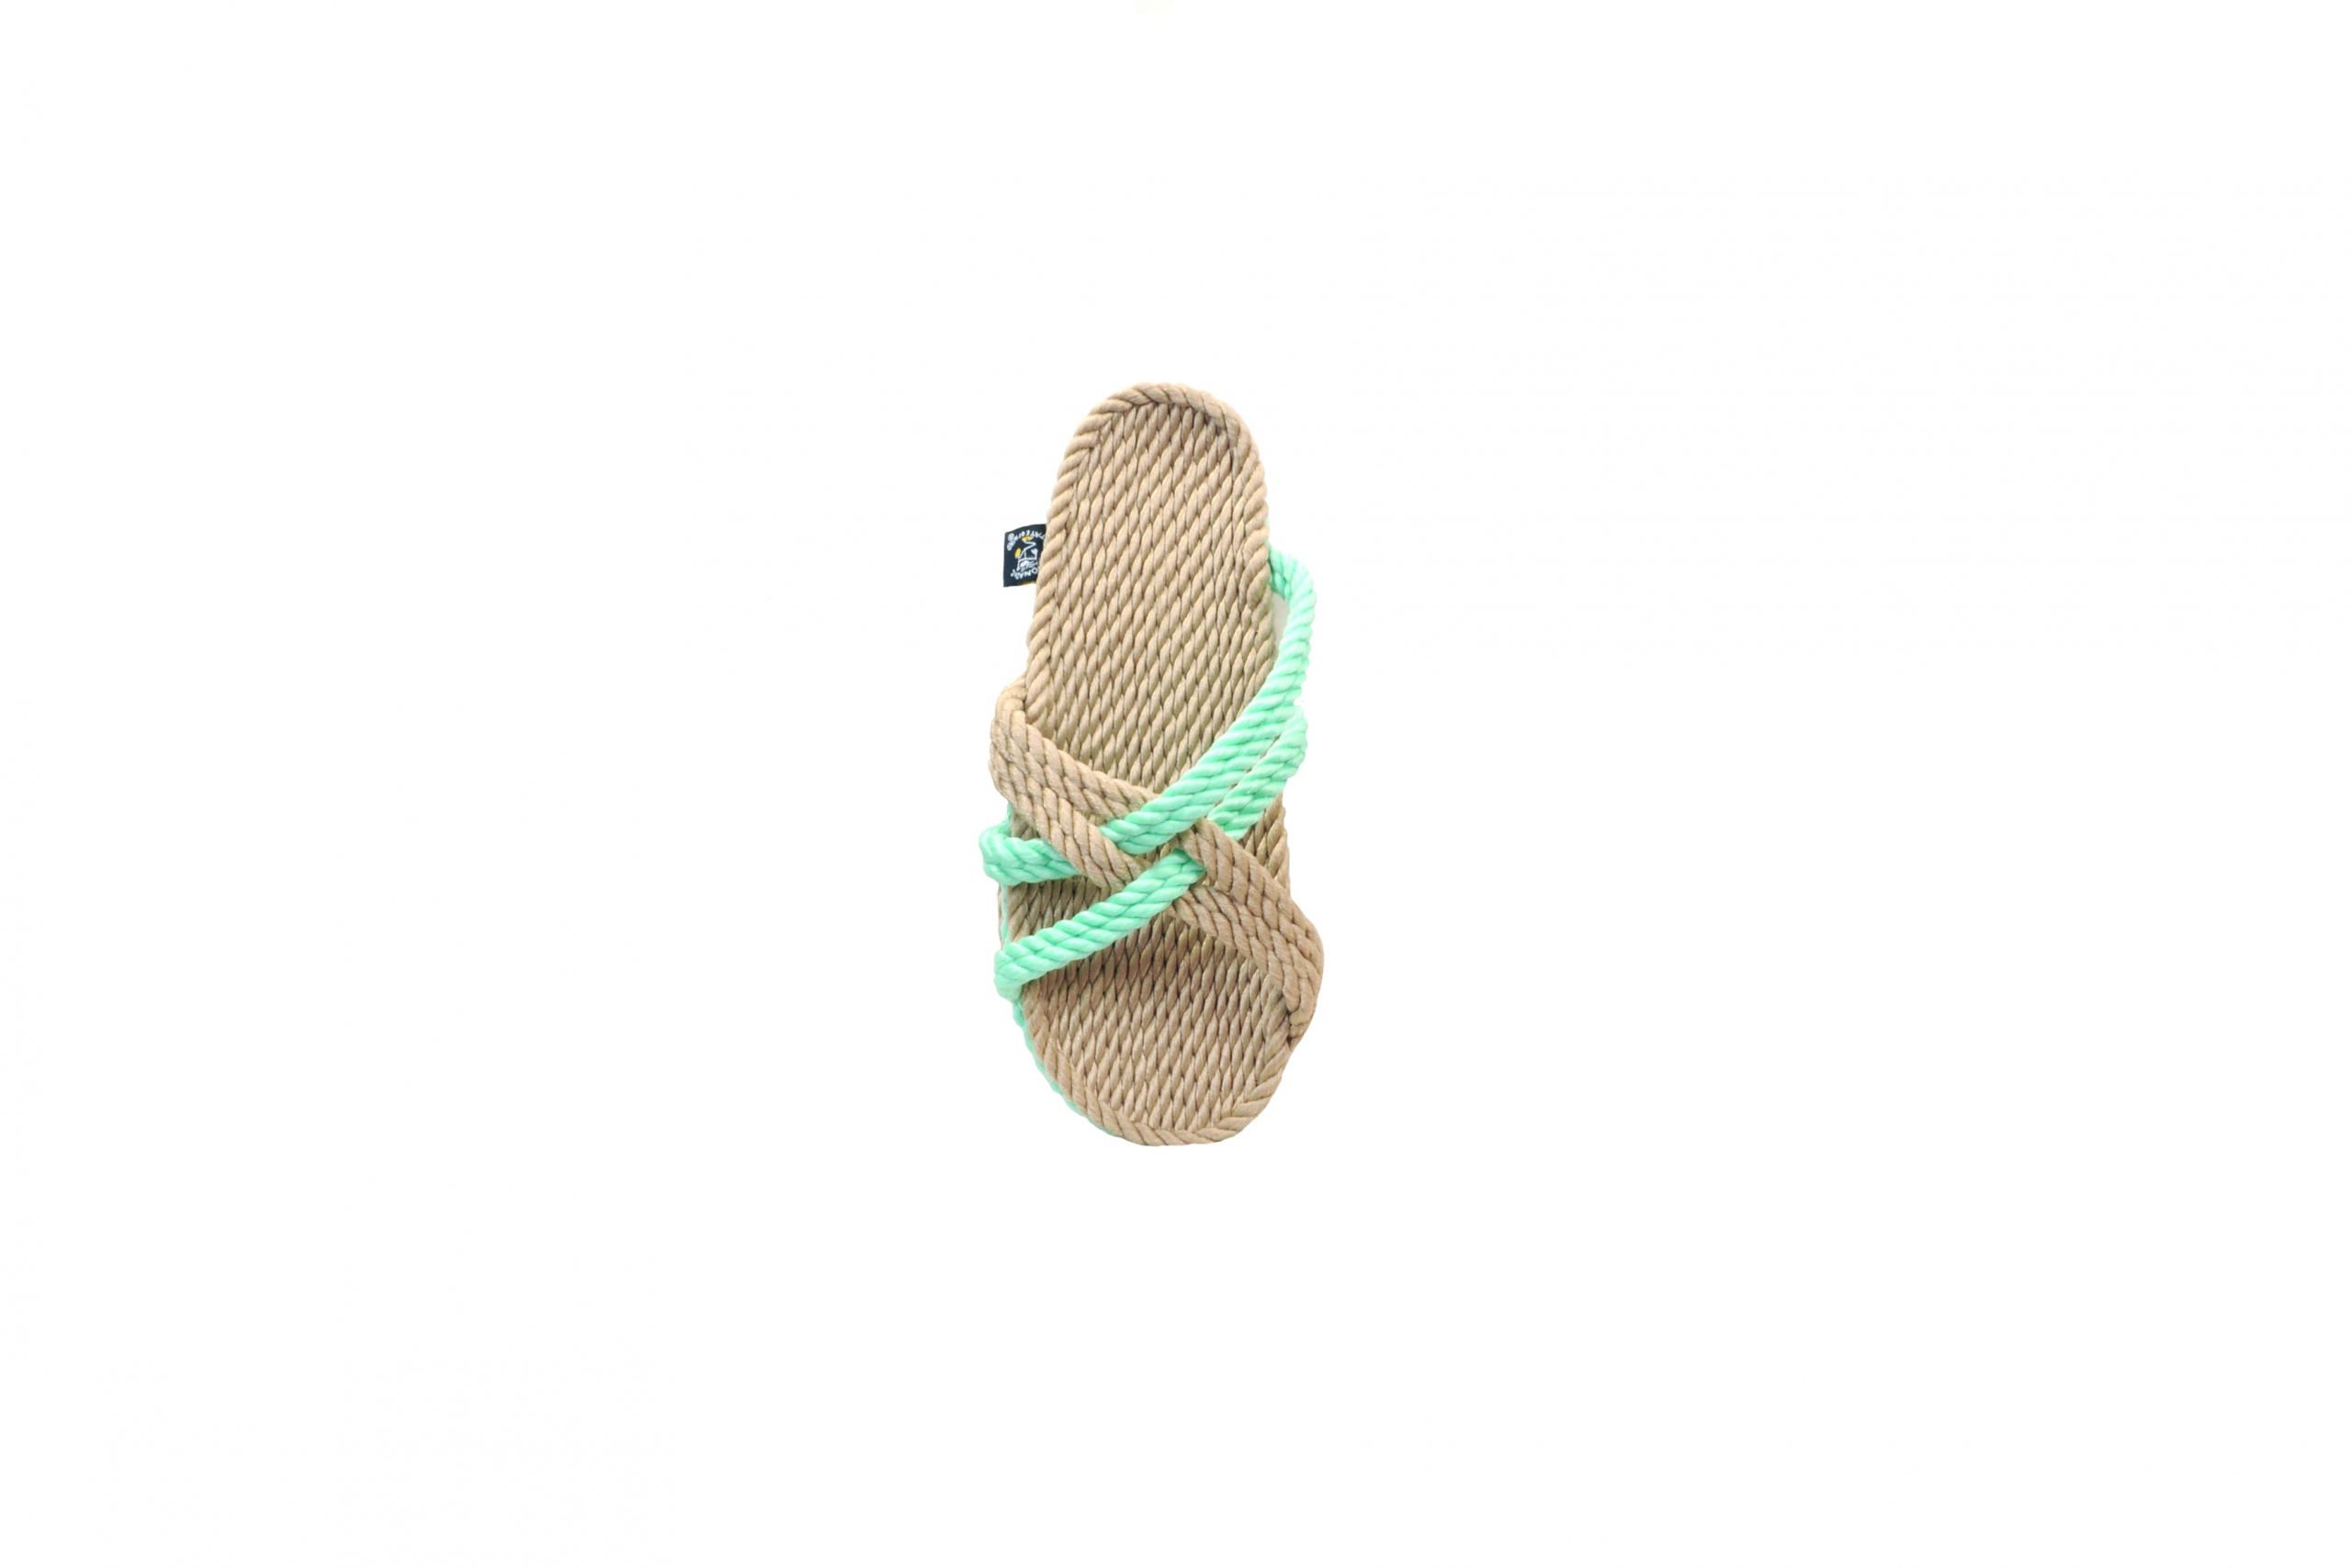 Sandales en corde, sandales boho, nomadic state of mind, sandals for men, sandales for women, modèle Slip on-Beige Neon Green